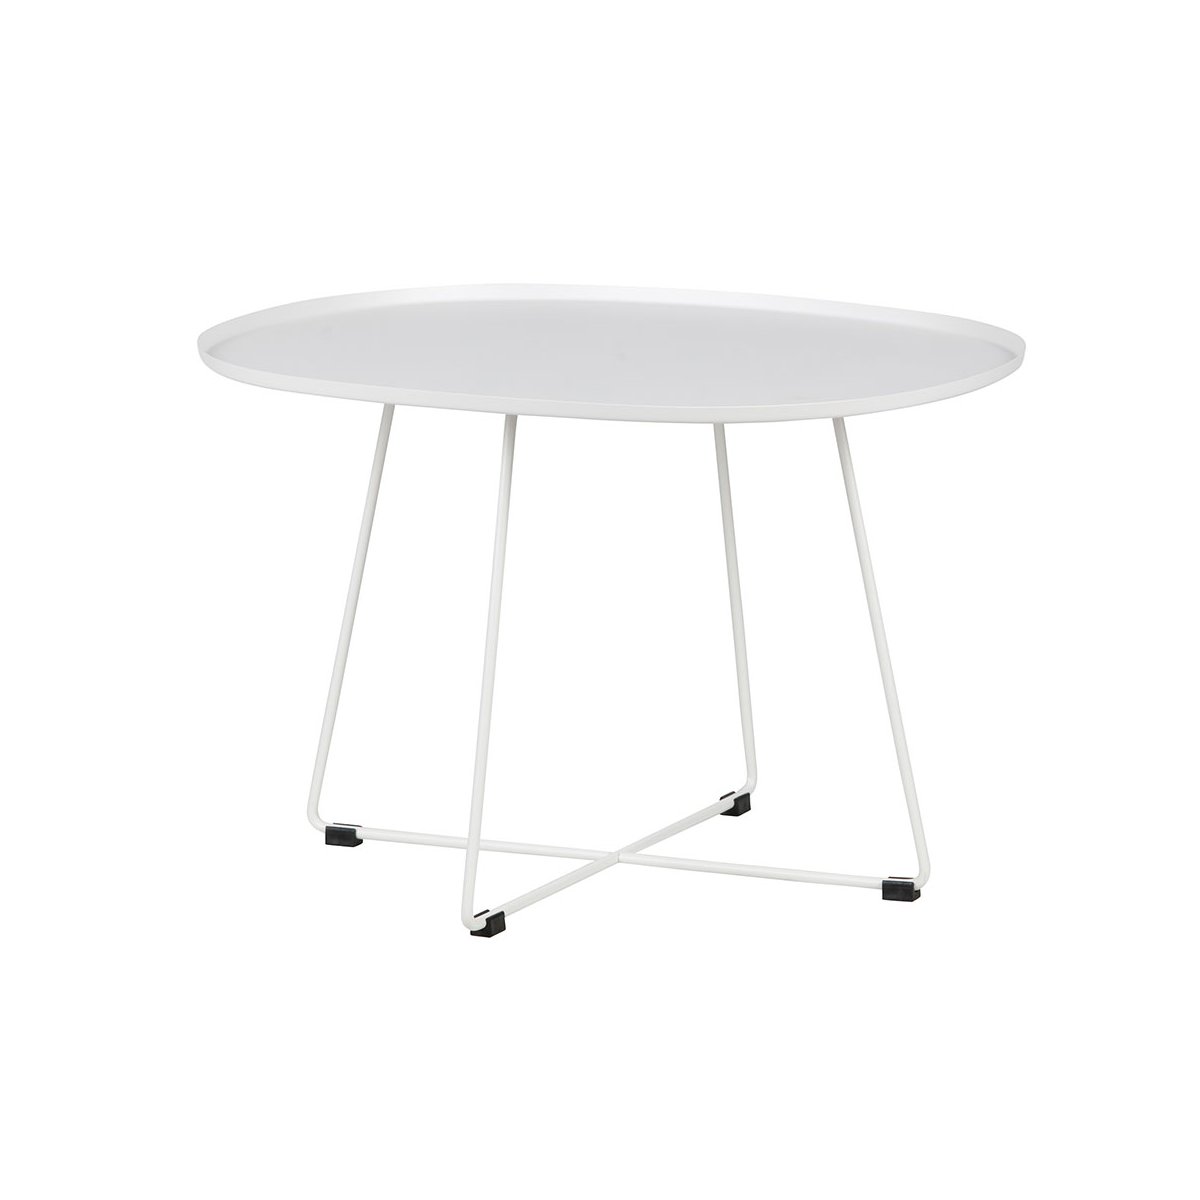 Table basse design minimaliste ovale métal blanc